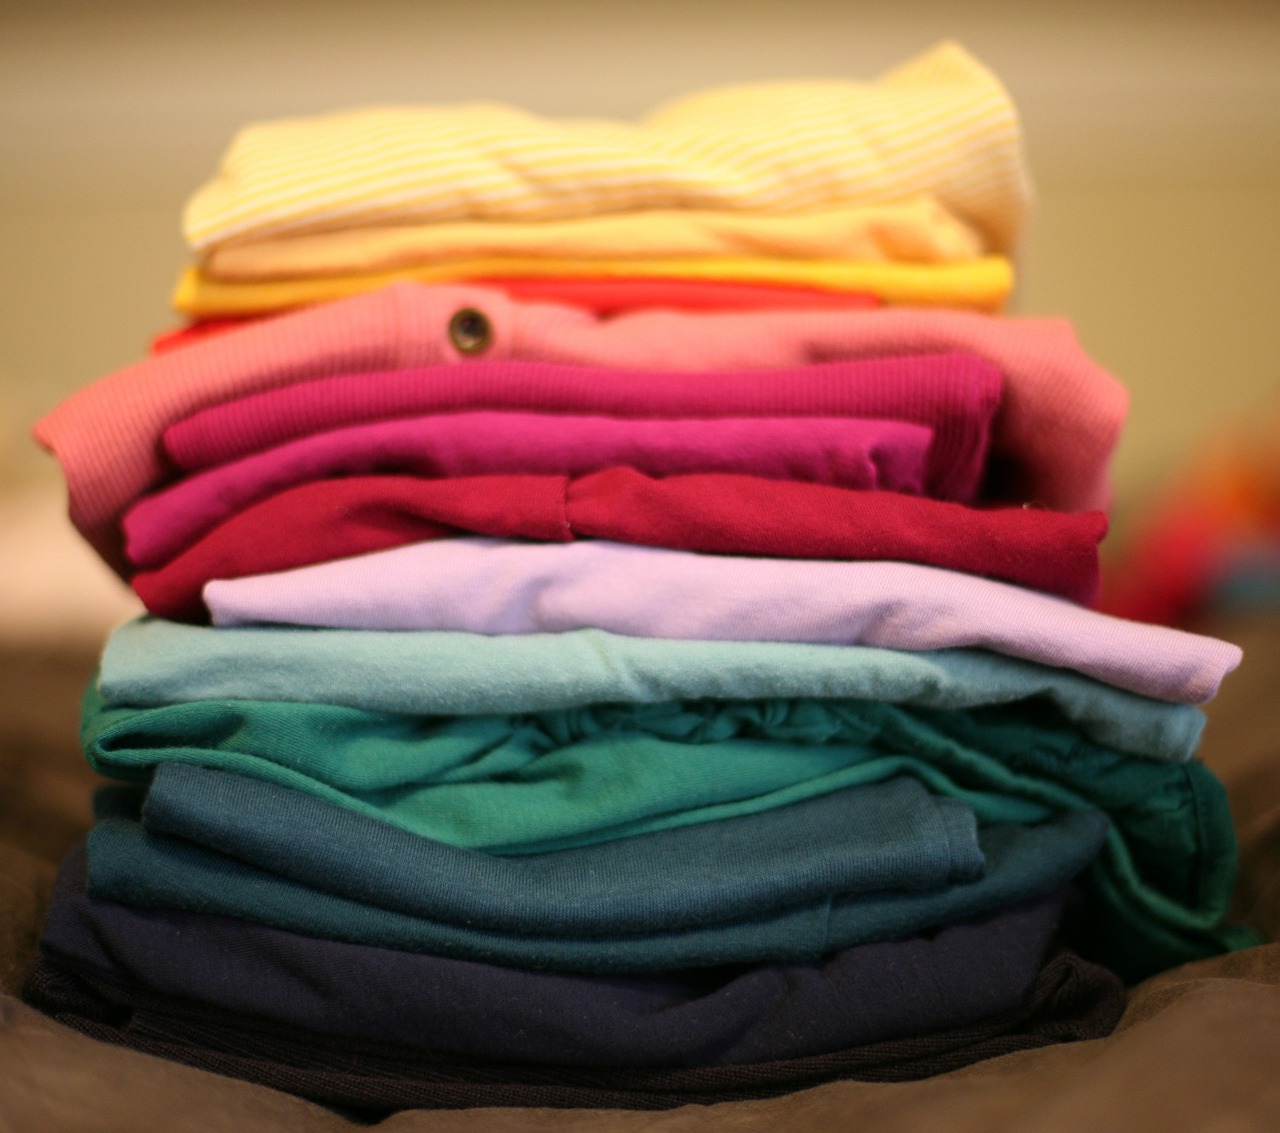 folded laundry stack free photo